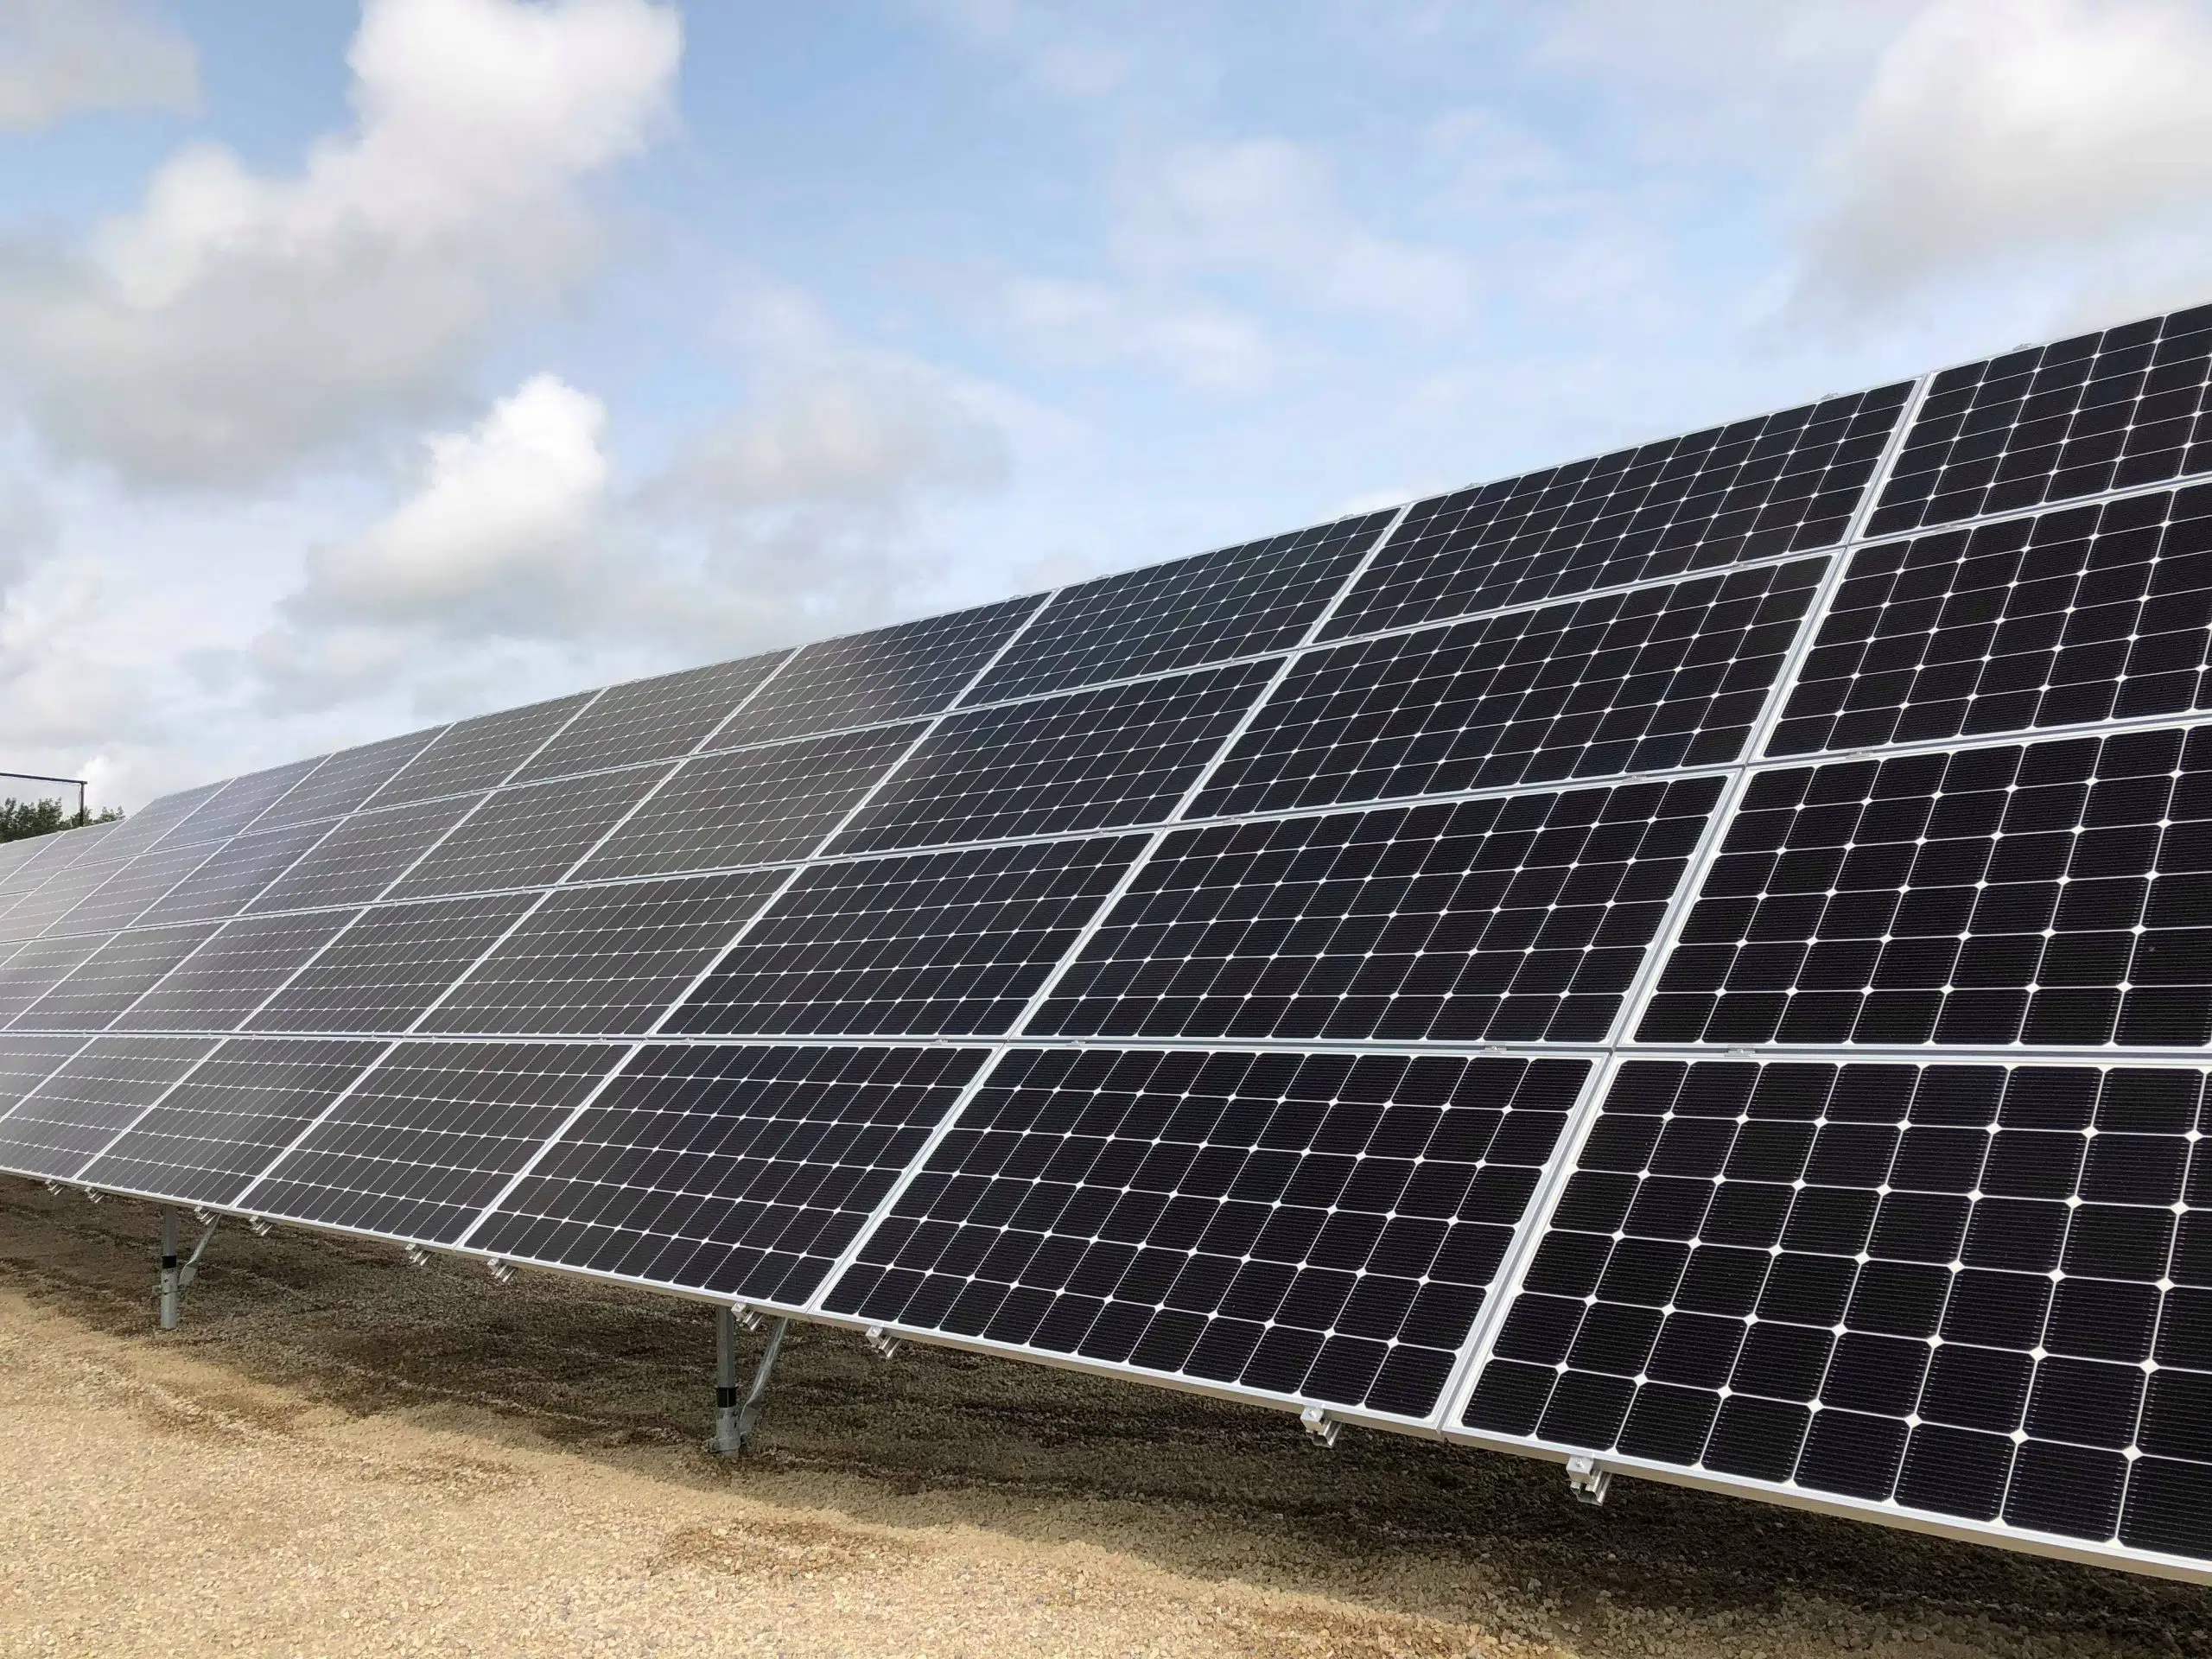 brazeau-county-unveils-latest-solar-project-rdnewsnow